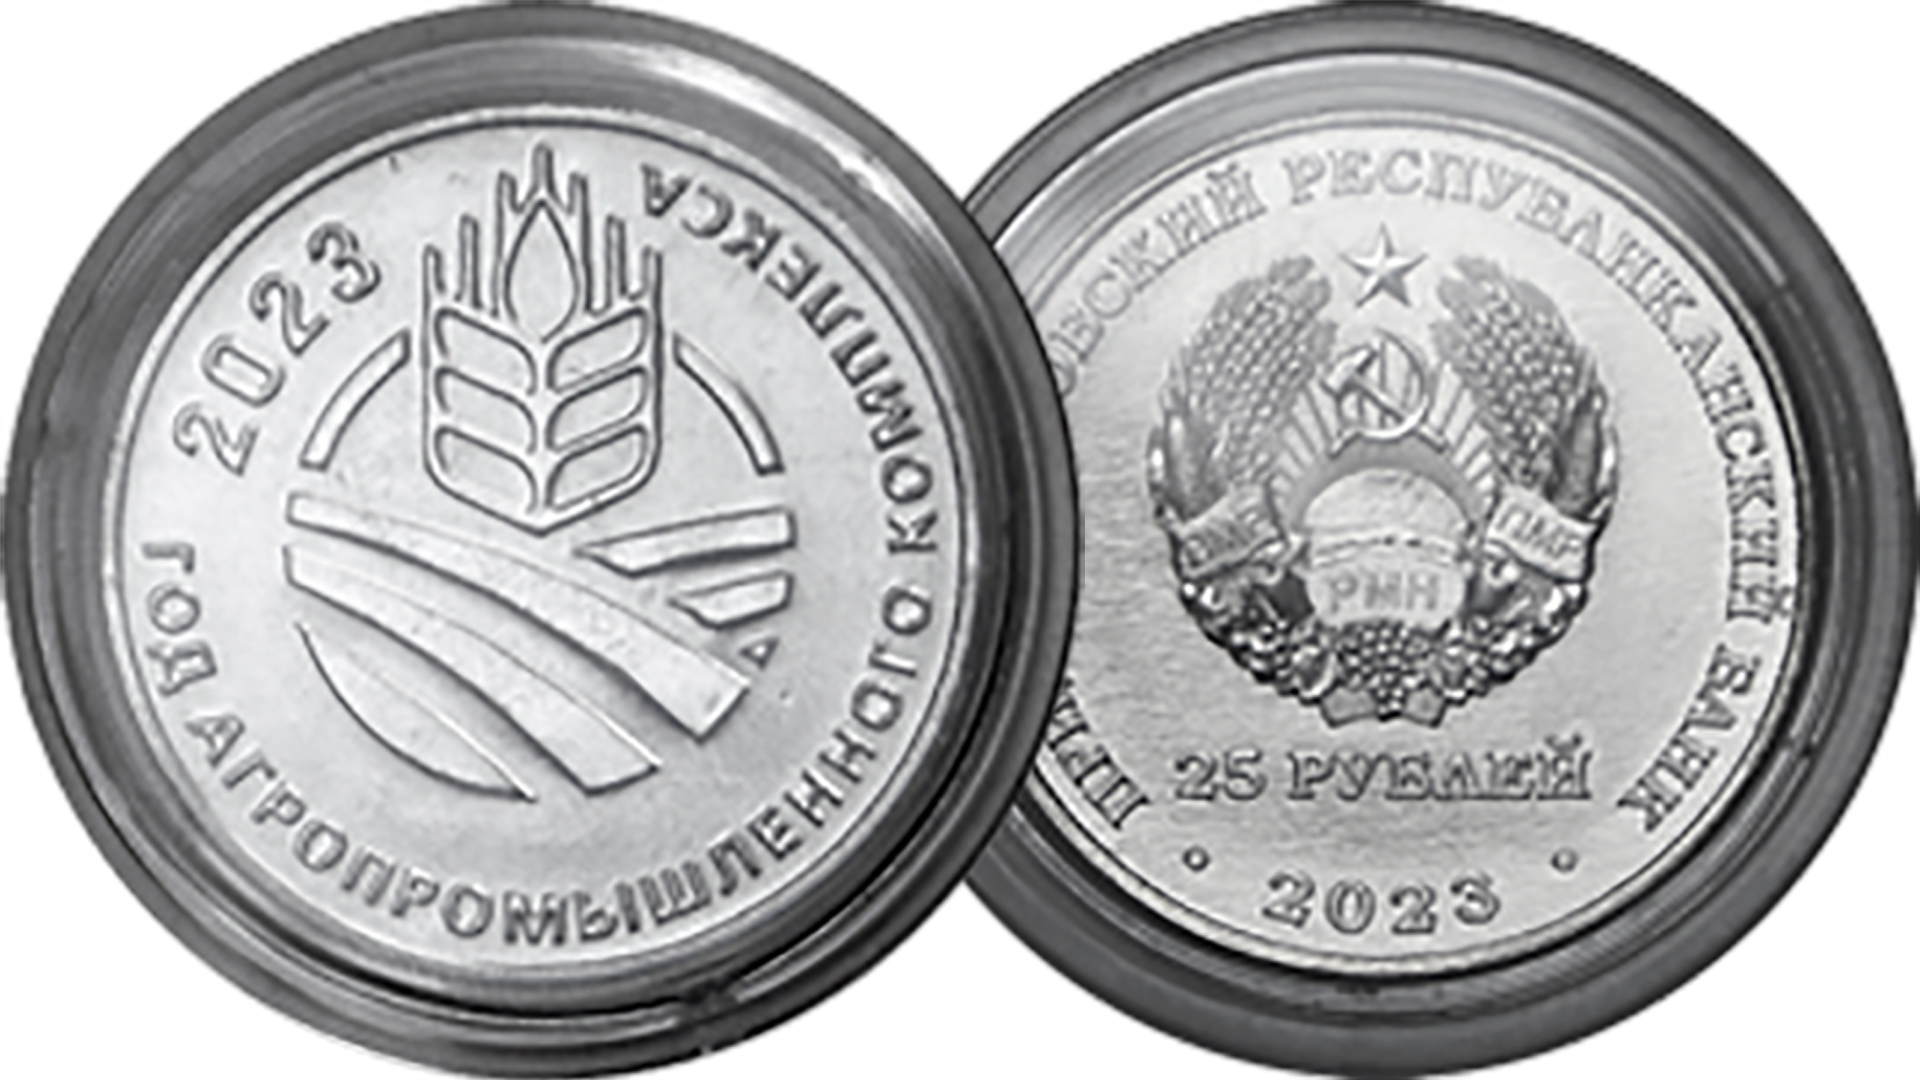 Новая монета ПМР. Год агропромышленного комплекса. Выпуск 2023 года.